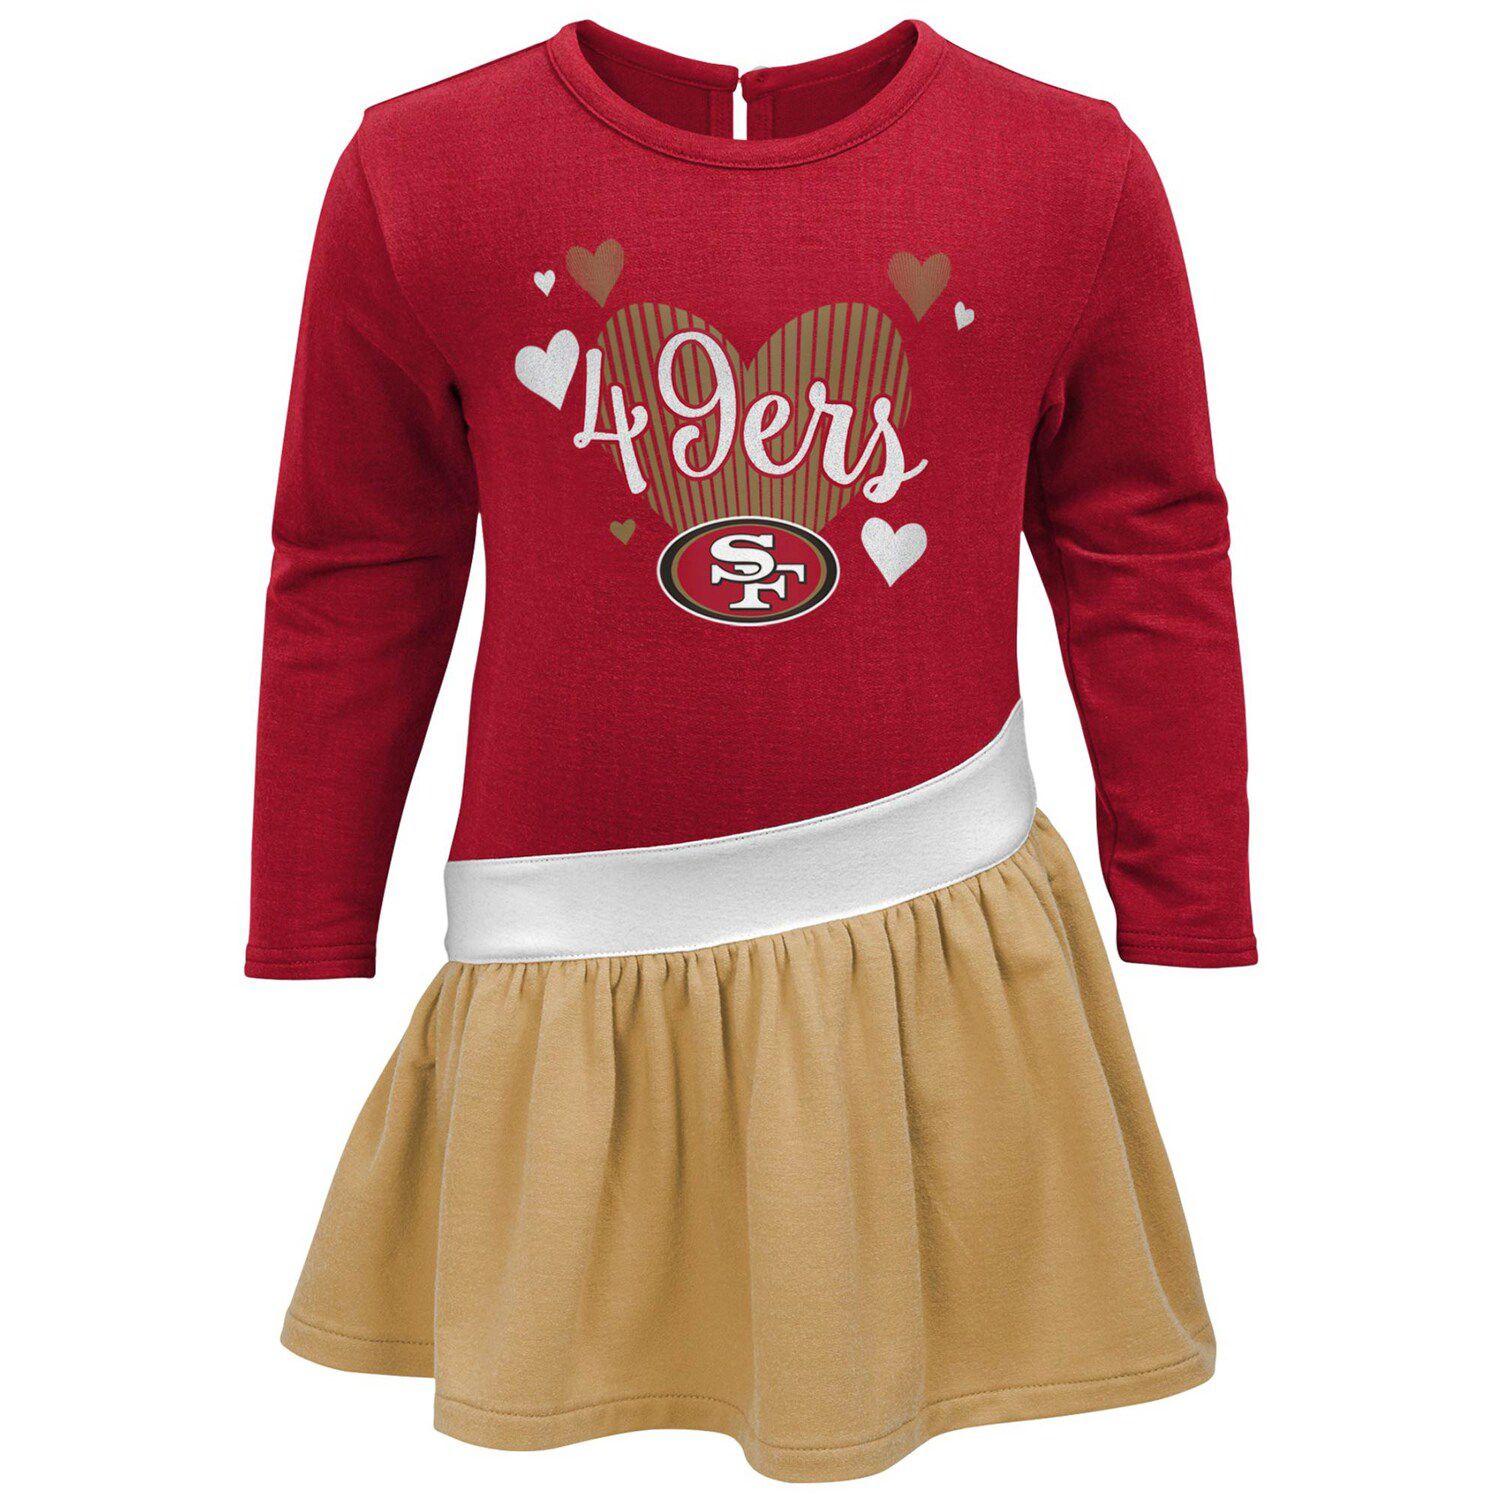 49ers girl jerseys